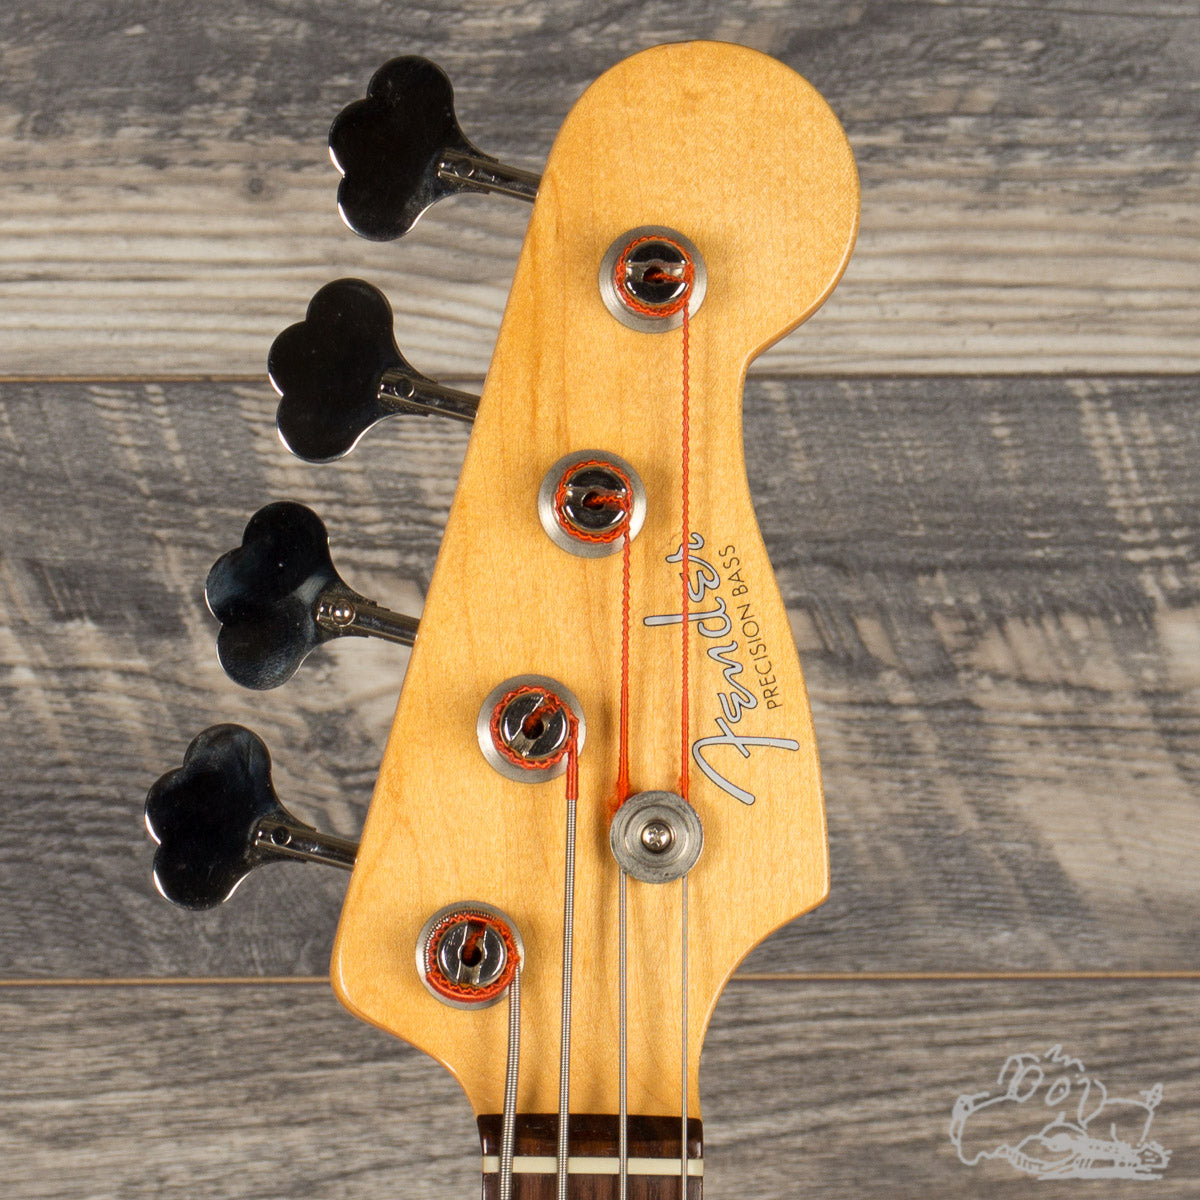 2015 Fender AVRI '62 Precision Bass